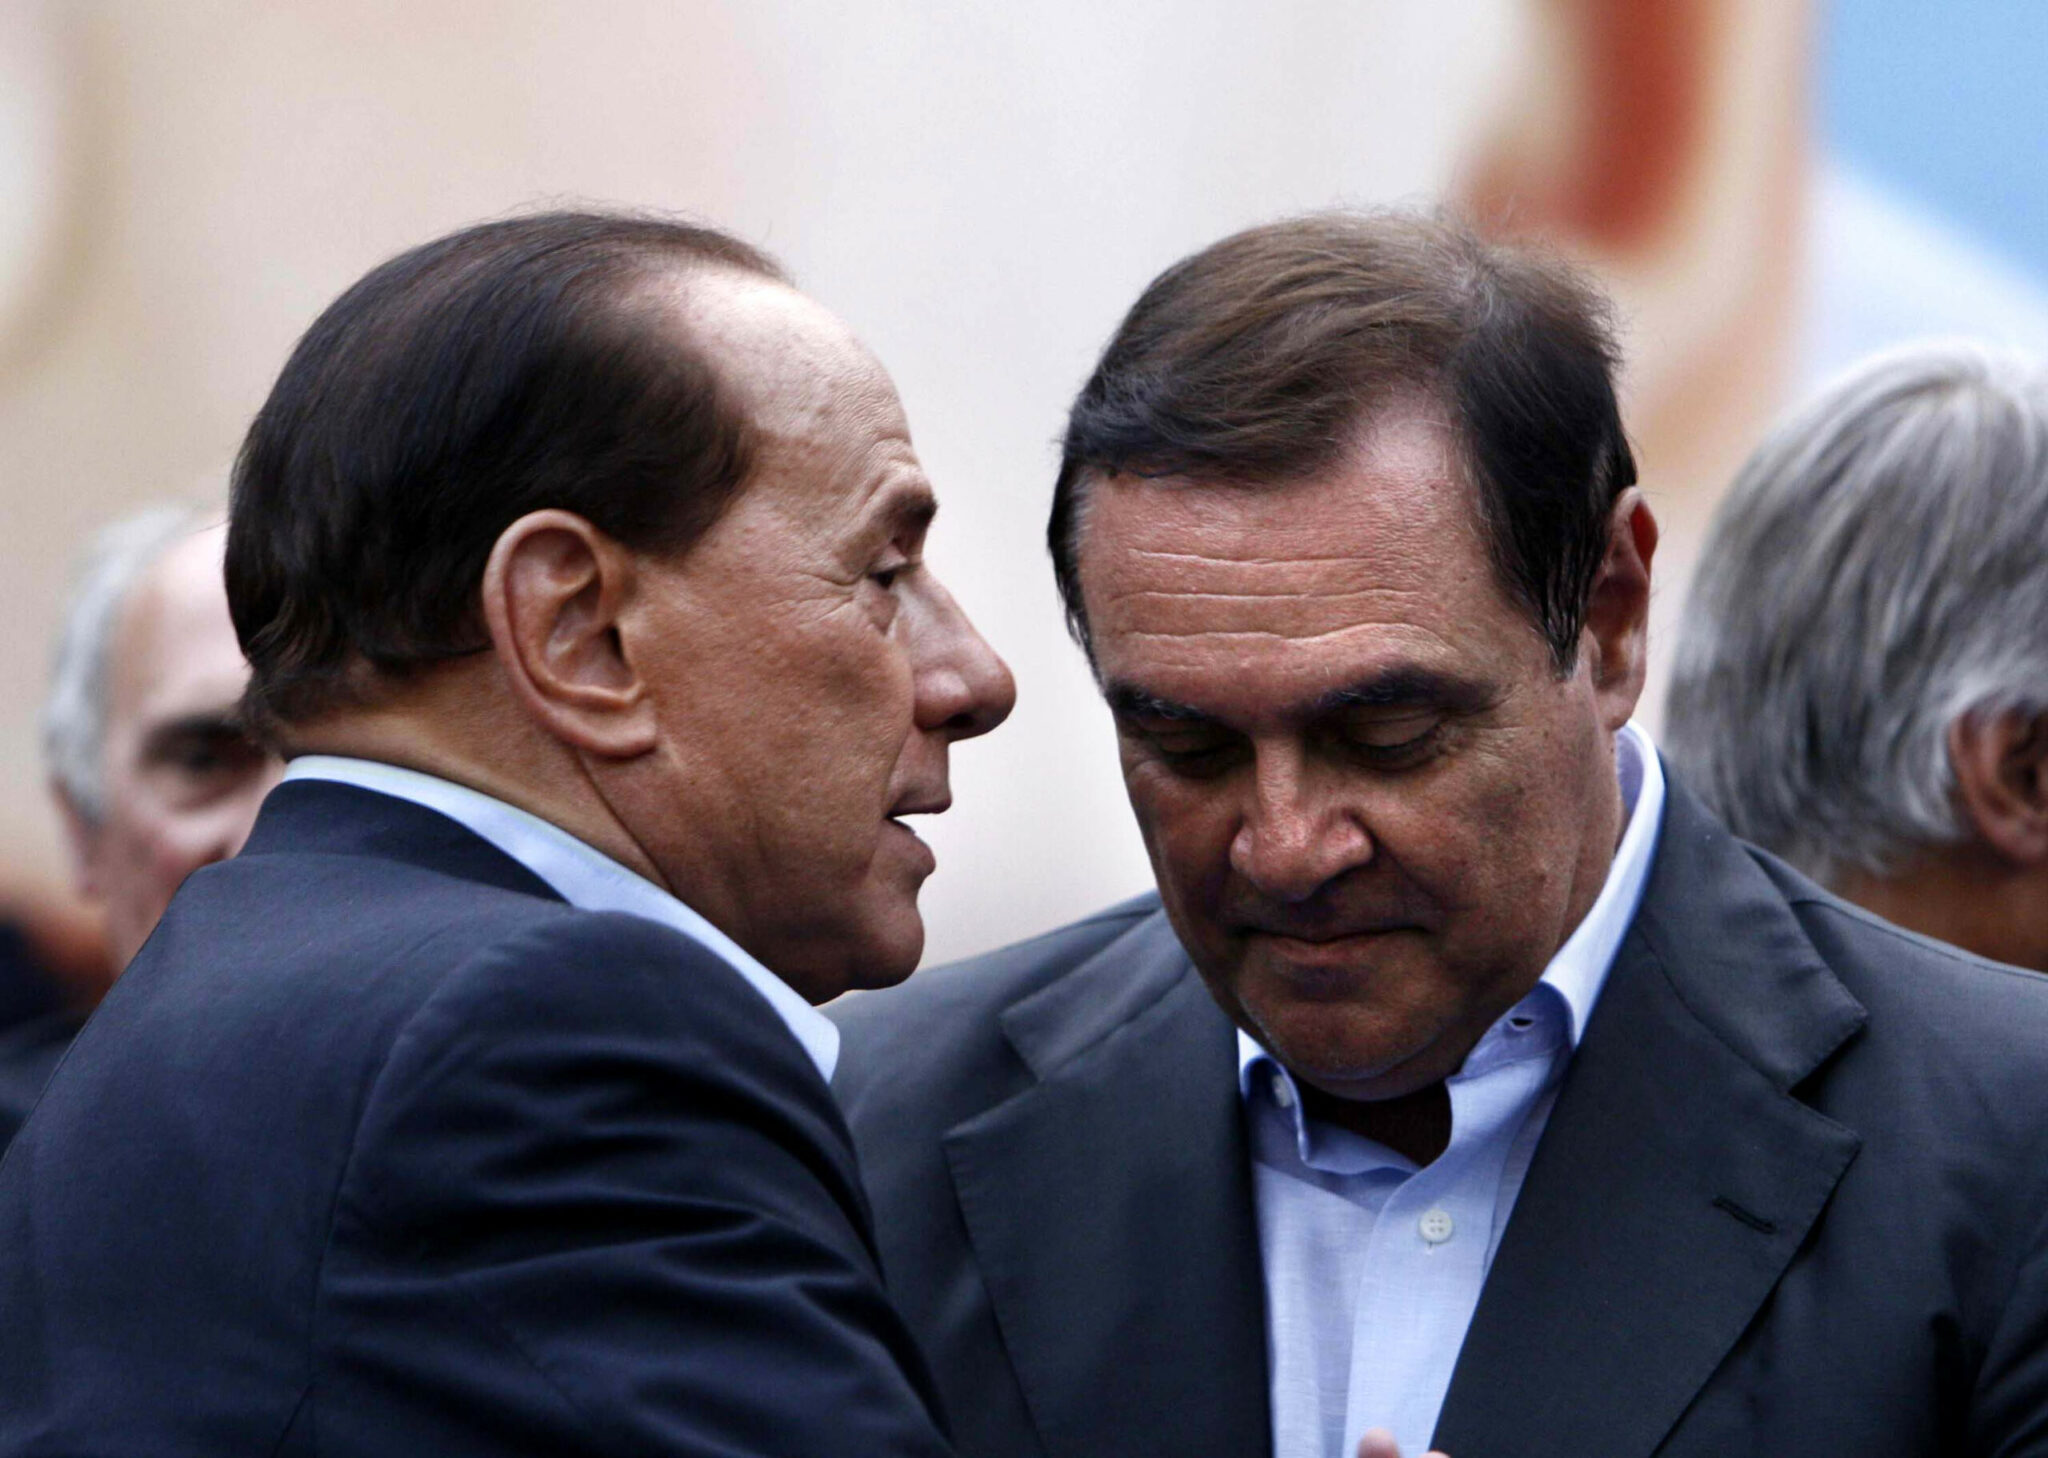 Mastella avverte Berlusconi: “Attento, vogliono fotterti"